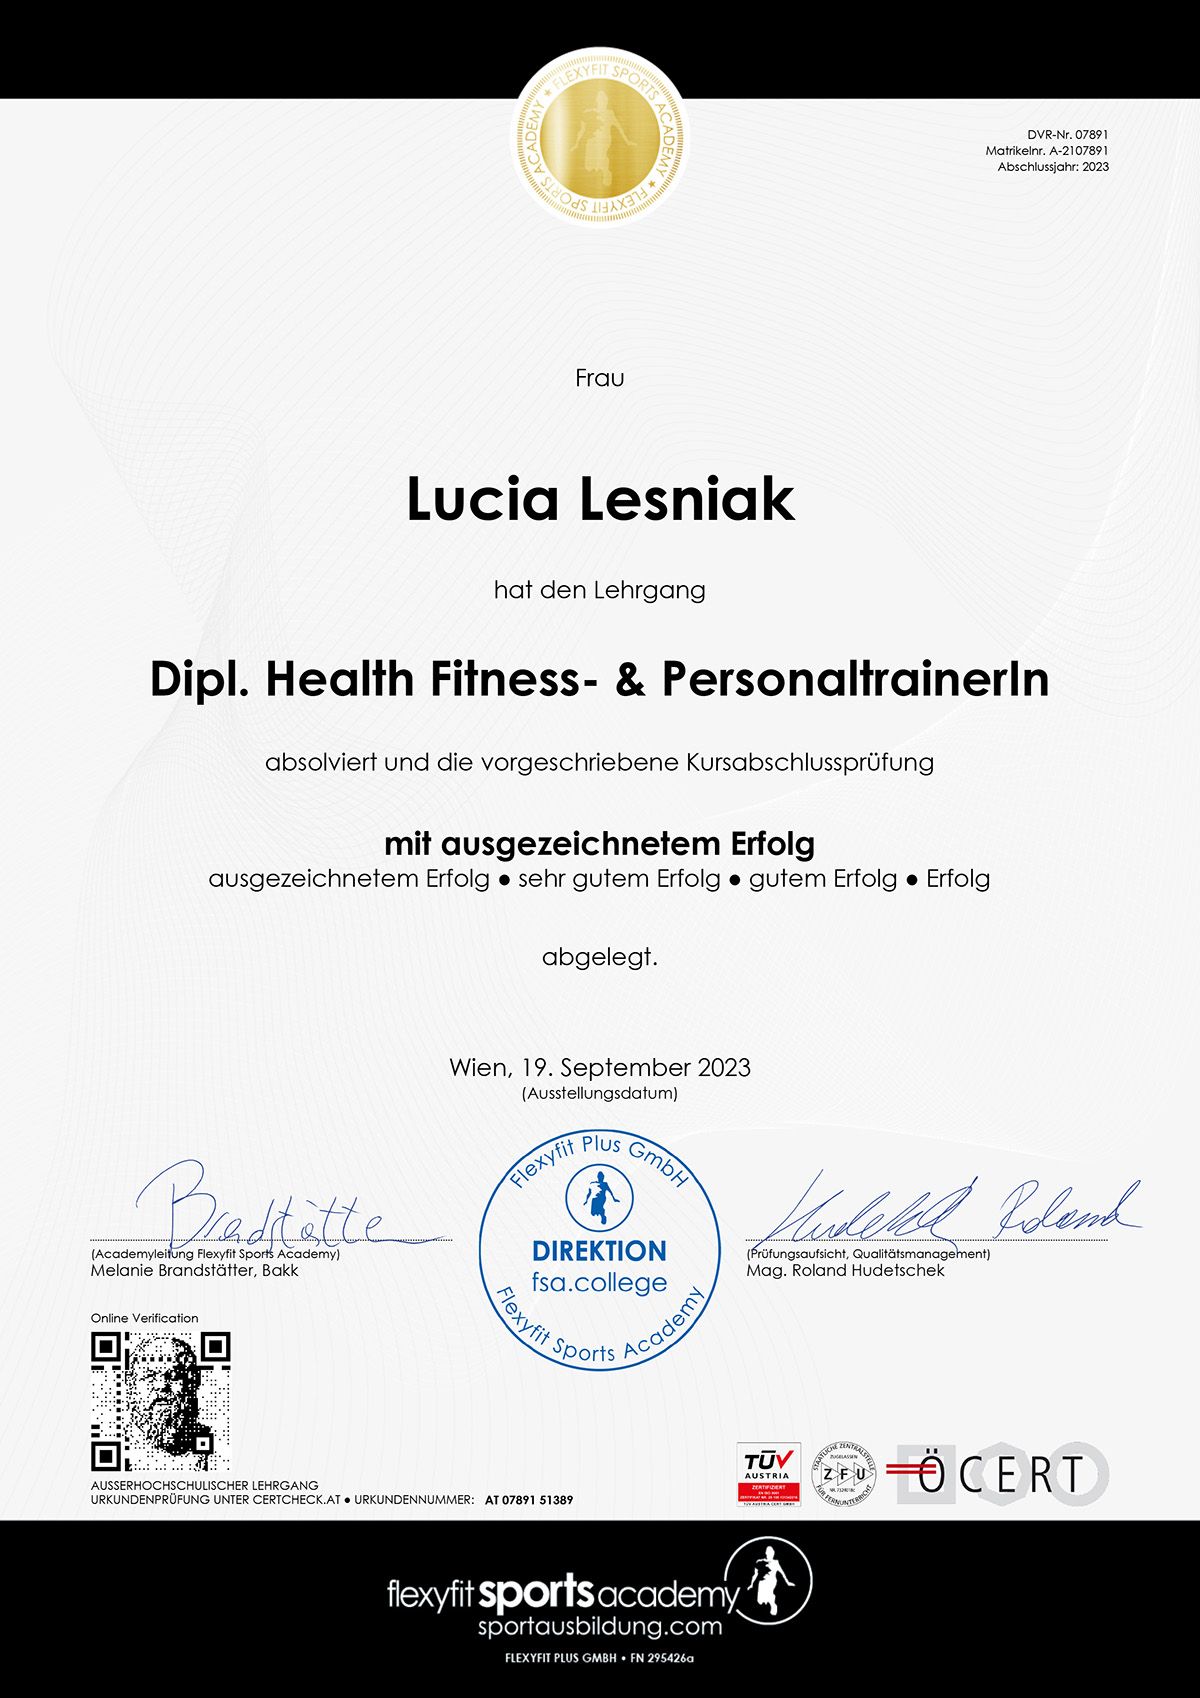 Web Diplom Flexyfit Academy Dipl Health Fitness Und Personaltrainerin